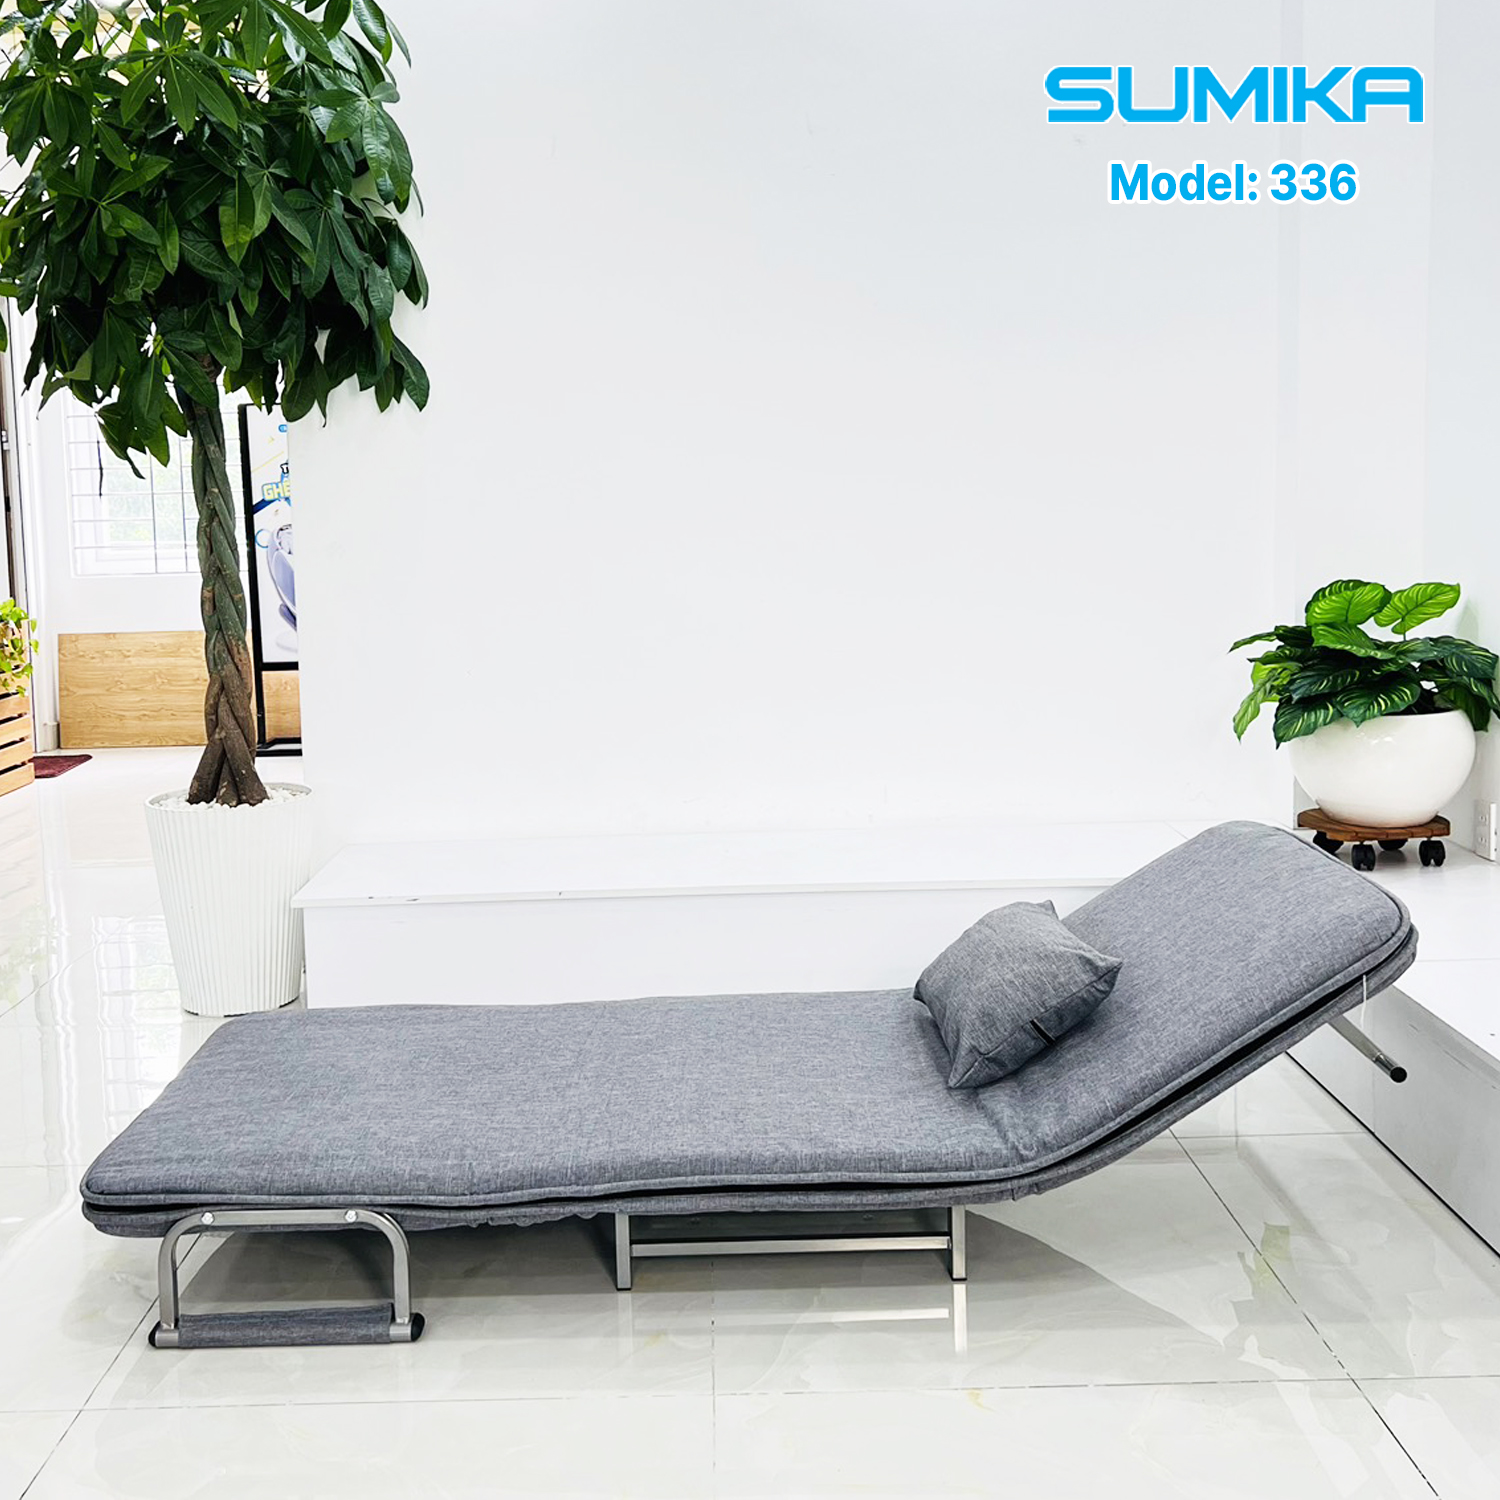 Ghế Sofa Giường thông minh gấp gọn SUMIKA 336, chiều rộng 80cm